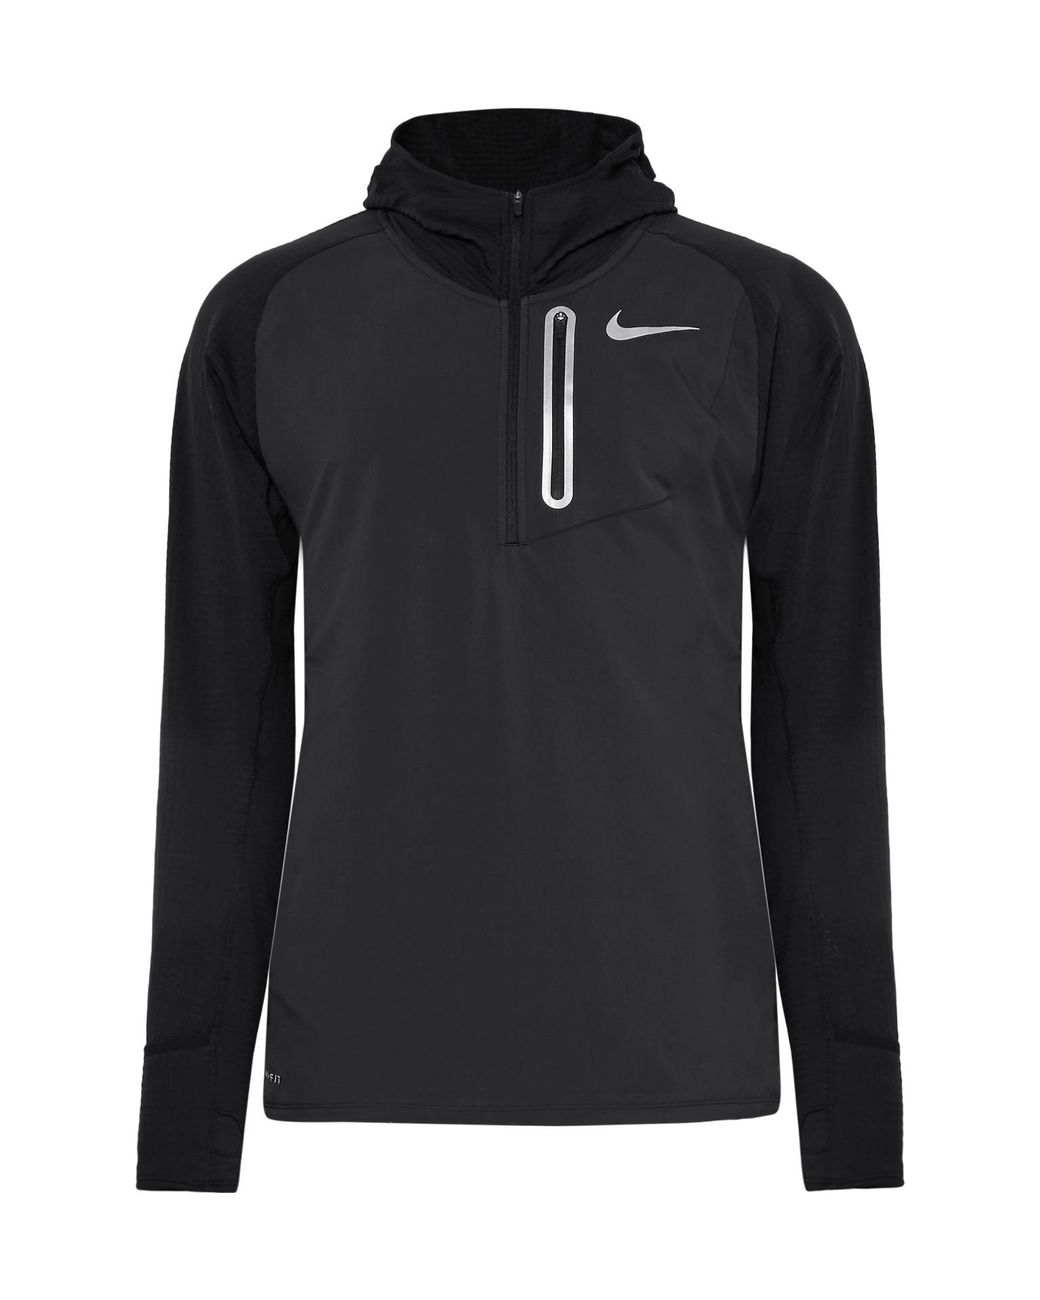 Nike Therma Element Hybrid Dri-fit Half-zip Hoodie in Black for Men Lyst